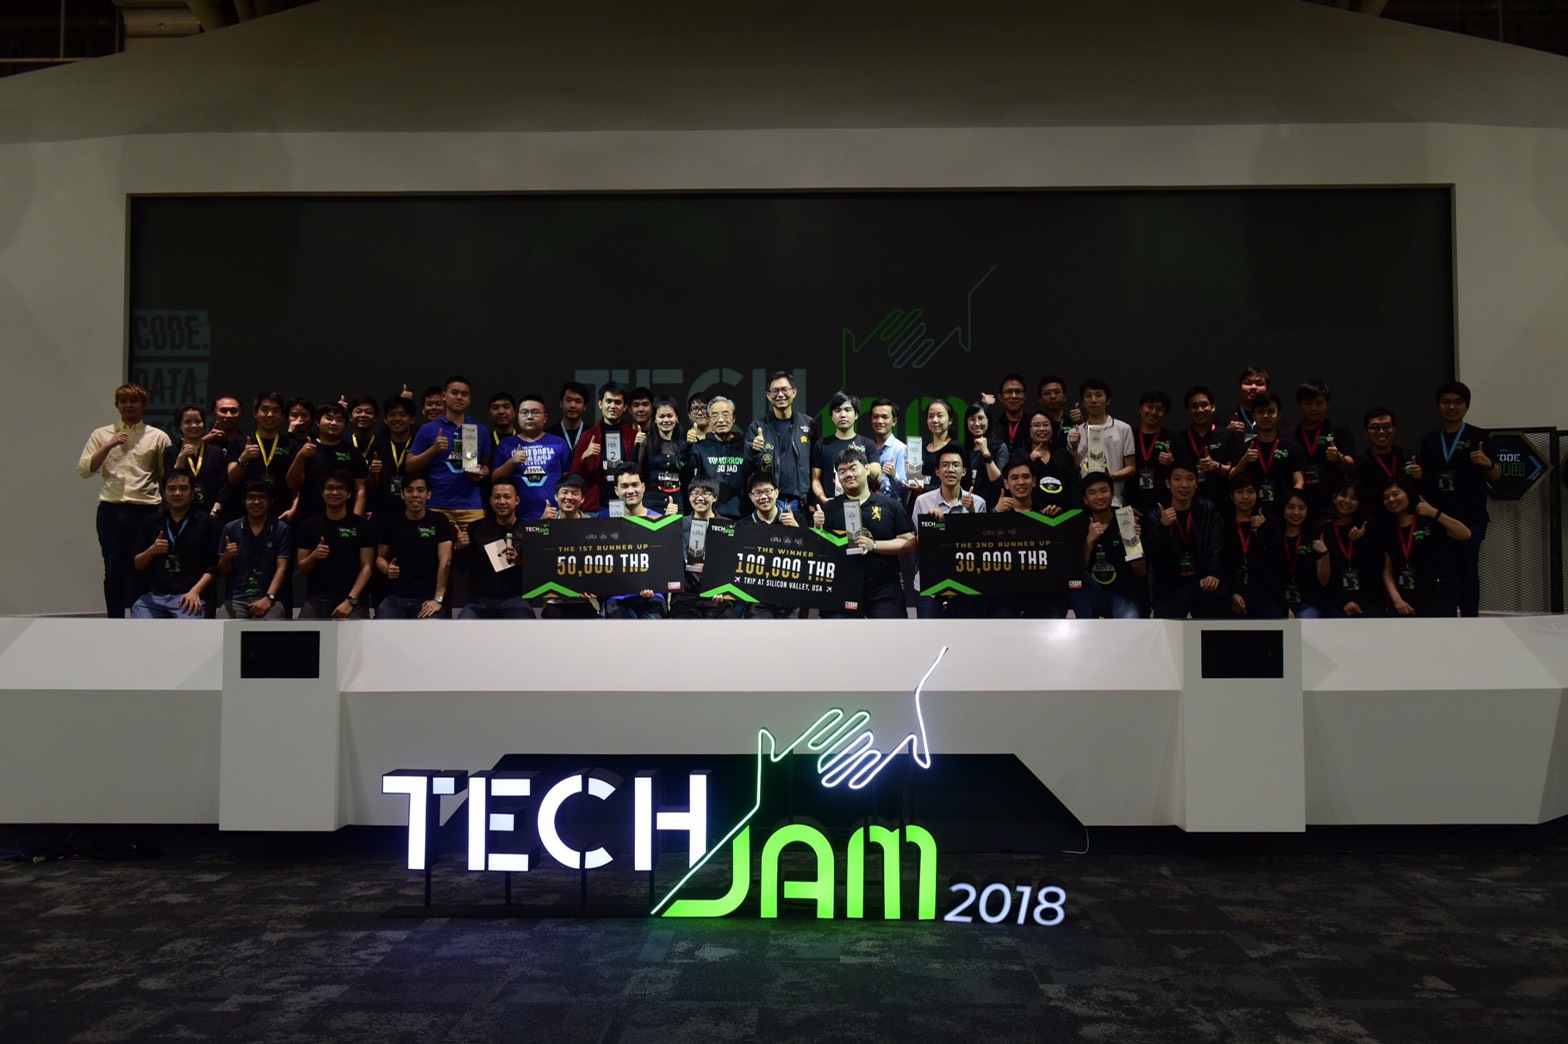 ประกาศผลการแข่งขัน TechJam 2018 The Final การแข่งขันสุดเข้มข้นตั้งแต่เช้าจรดค่ำ ชิงตั๋วสู่ Sillicon Valley